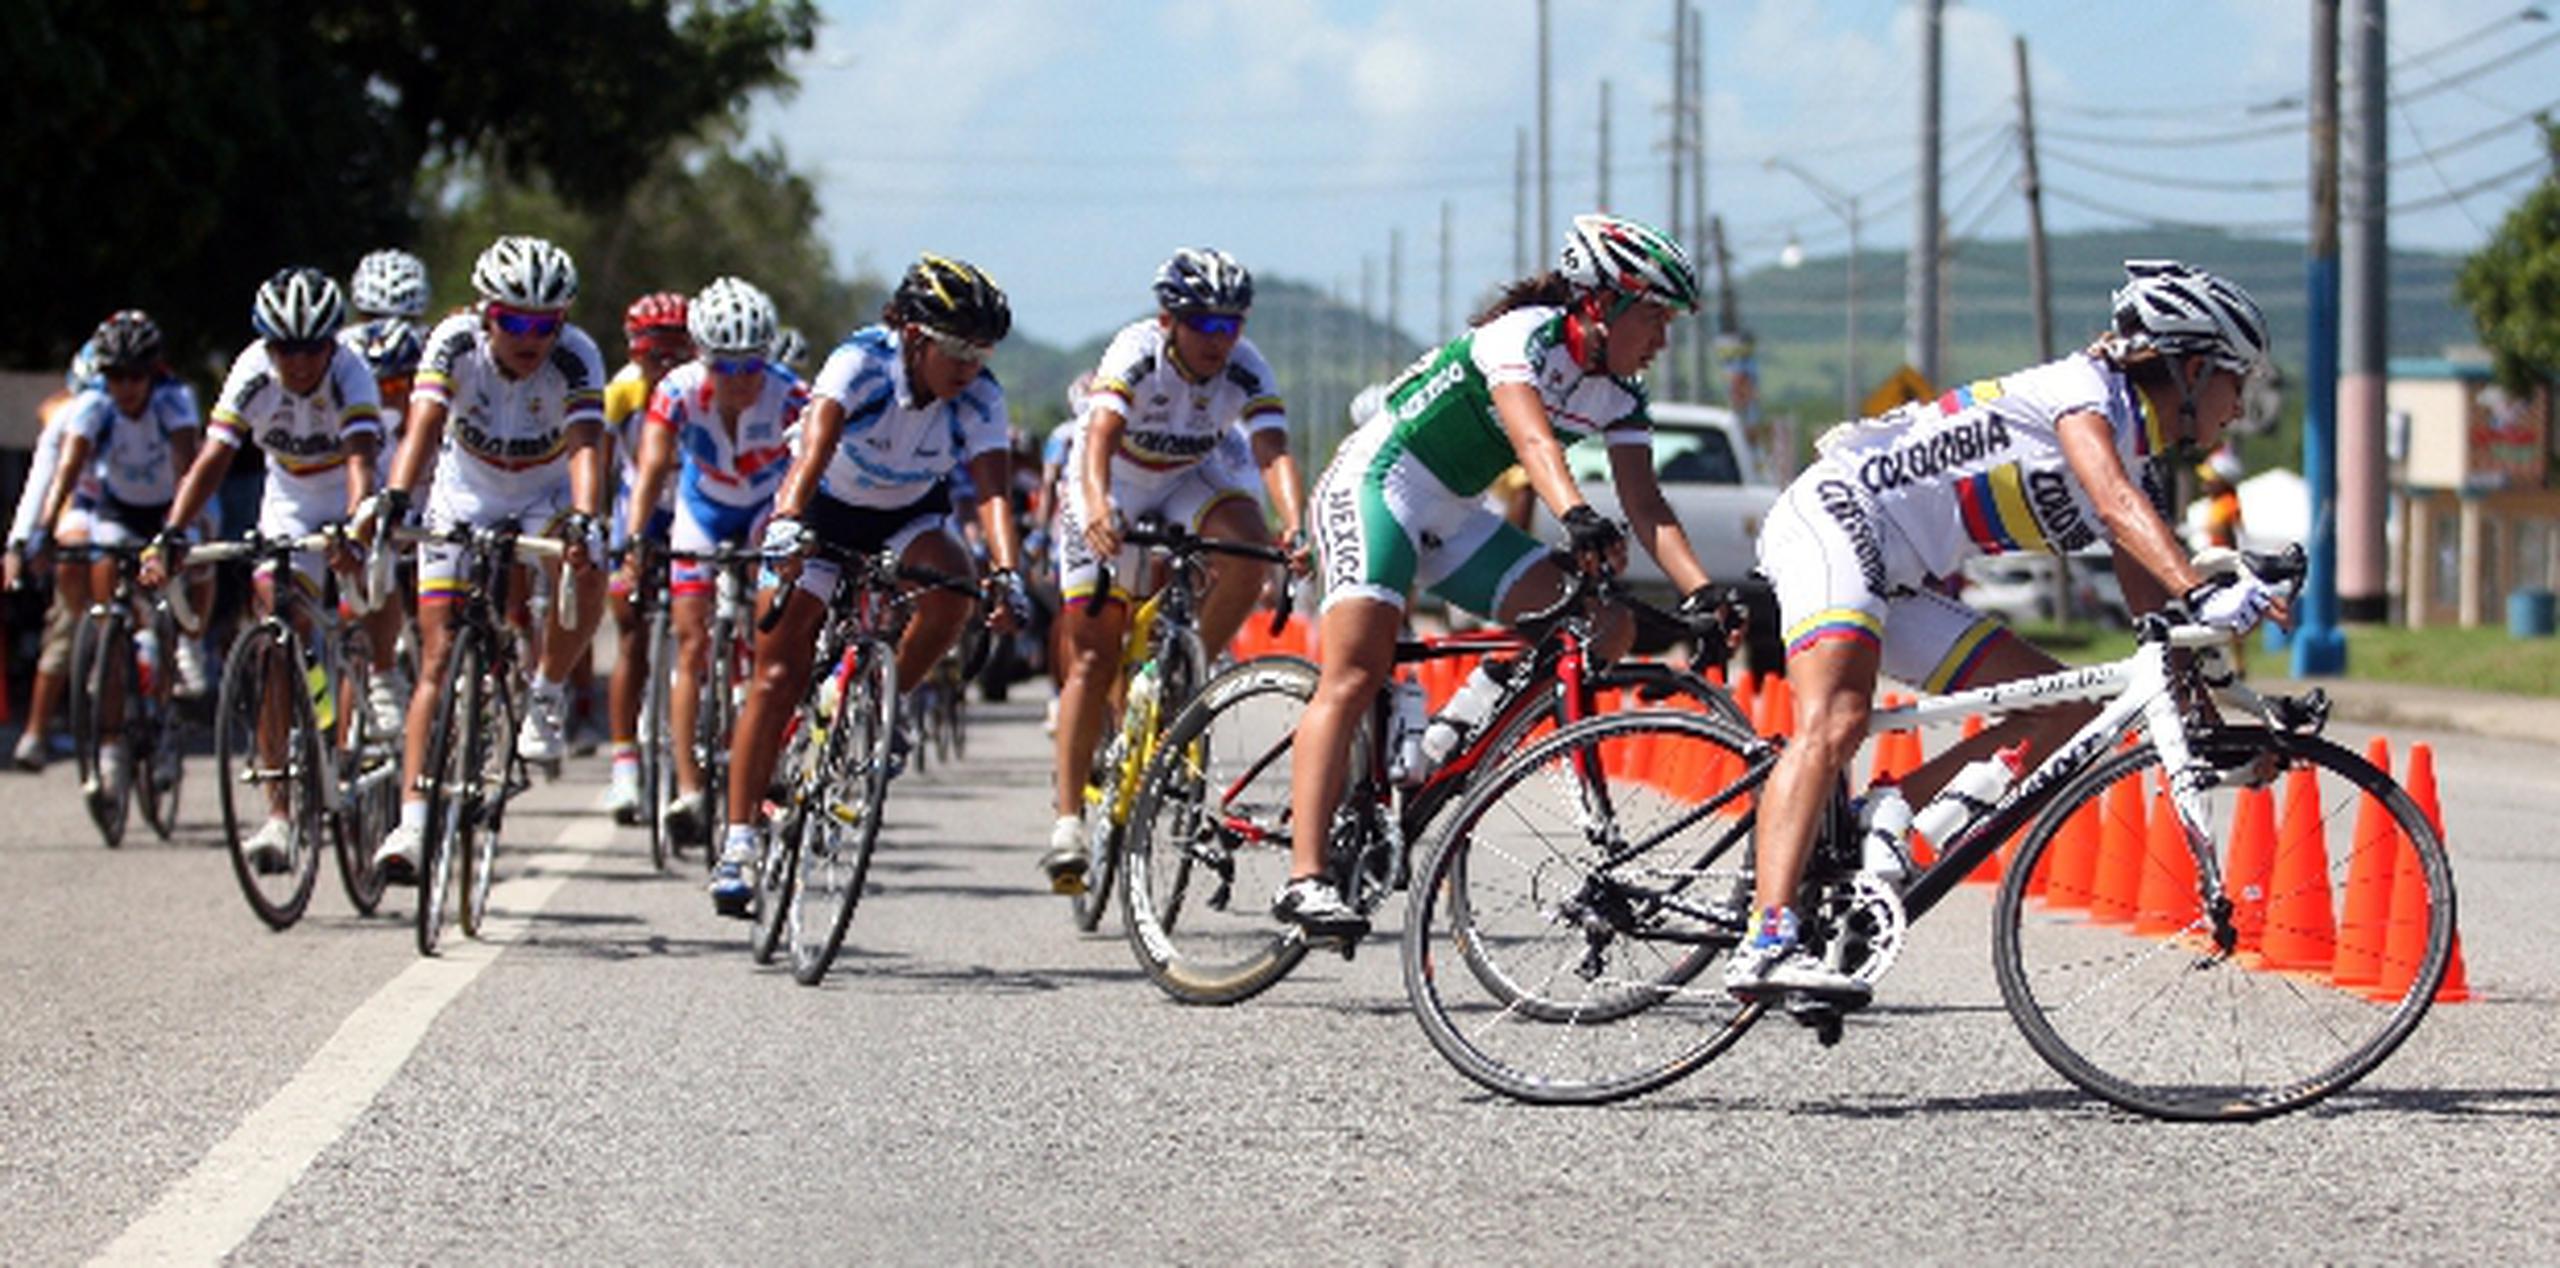 La disciplina del ciclismo femenino se practica en el olimpismo. En la imagen, un grupo de competidoras durante los Juegos Centroameri-canos y del Caribe de Mayagüez 2010. (Archivo)